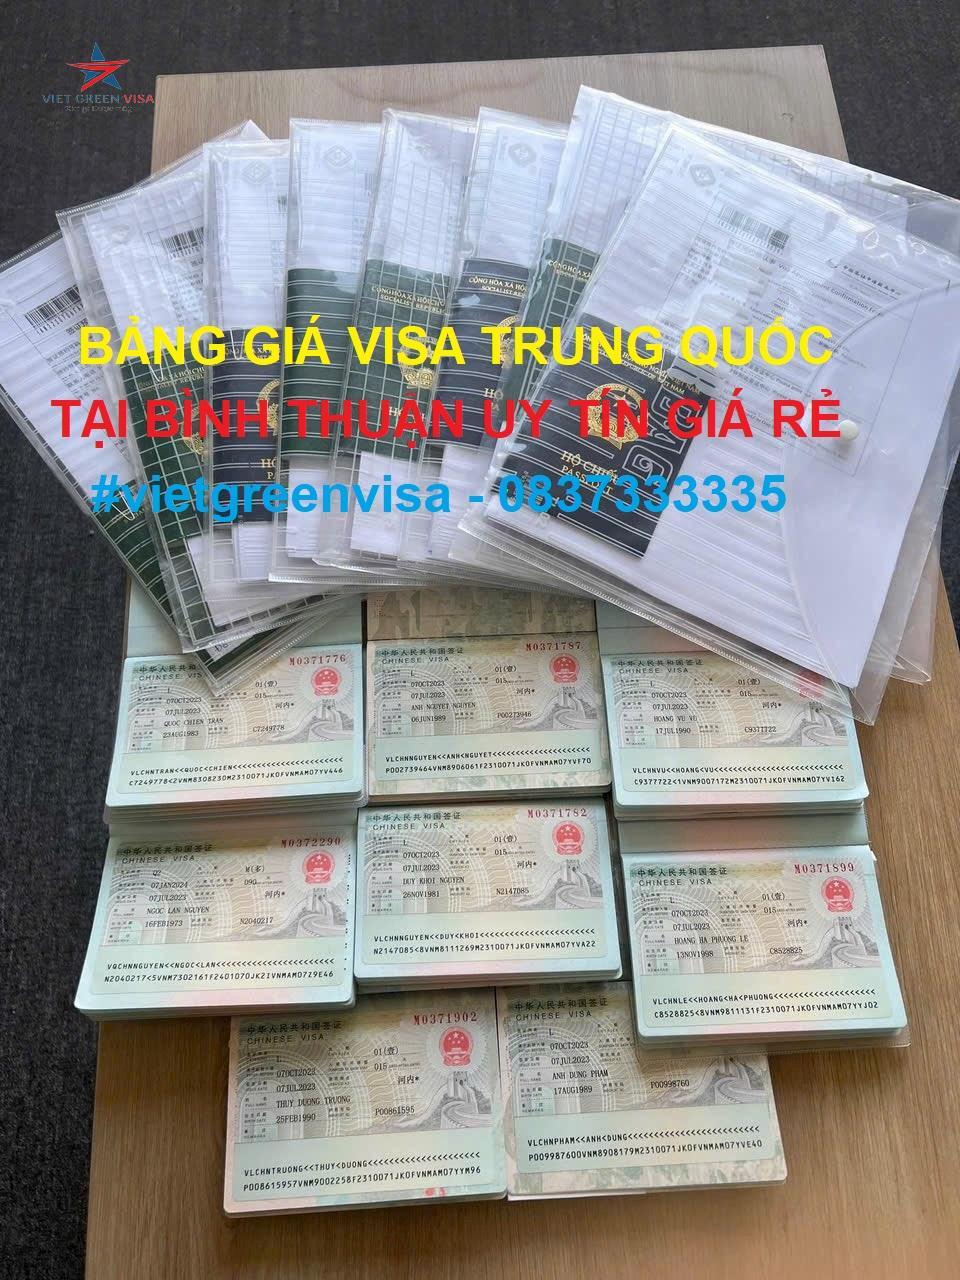 Dịch vụ xin visa Trung Quốc tại Bình Thuận uy tín giá rẻ